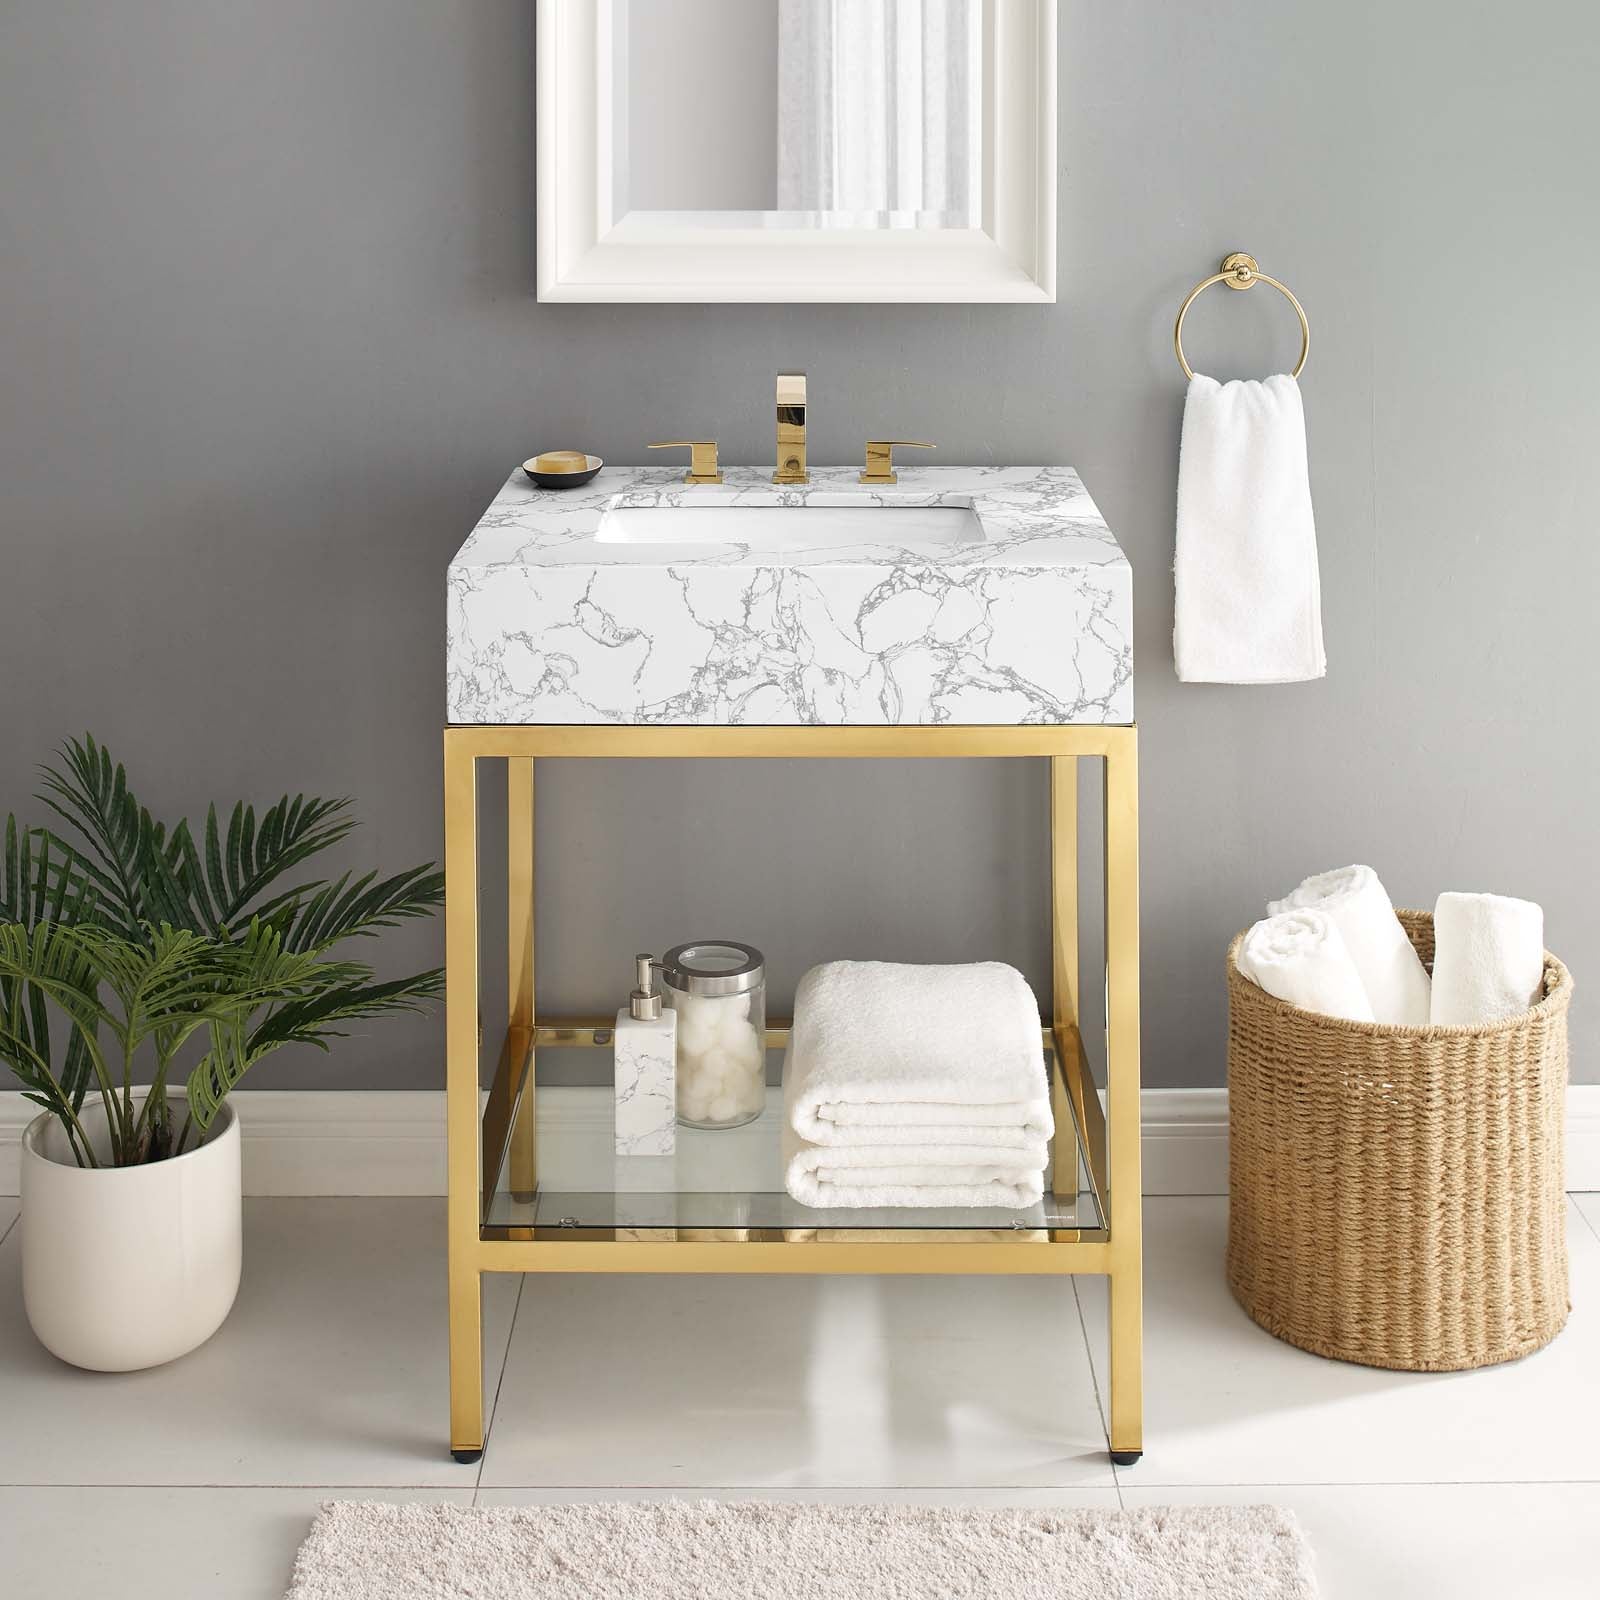 Kingsley 26" Gold Stainless Steel Bathroom Vanity-Bathroom Vanity-Modway-Wall2Wall Furnishings